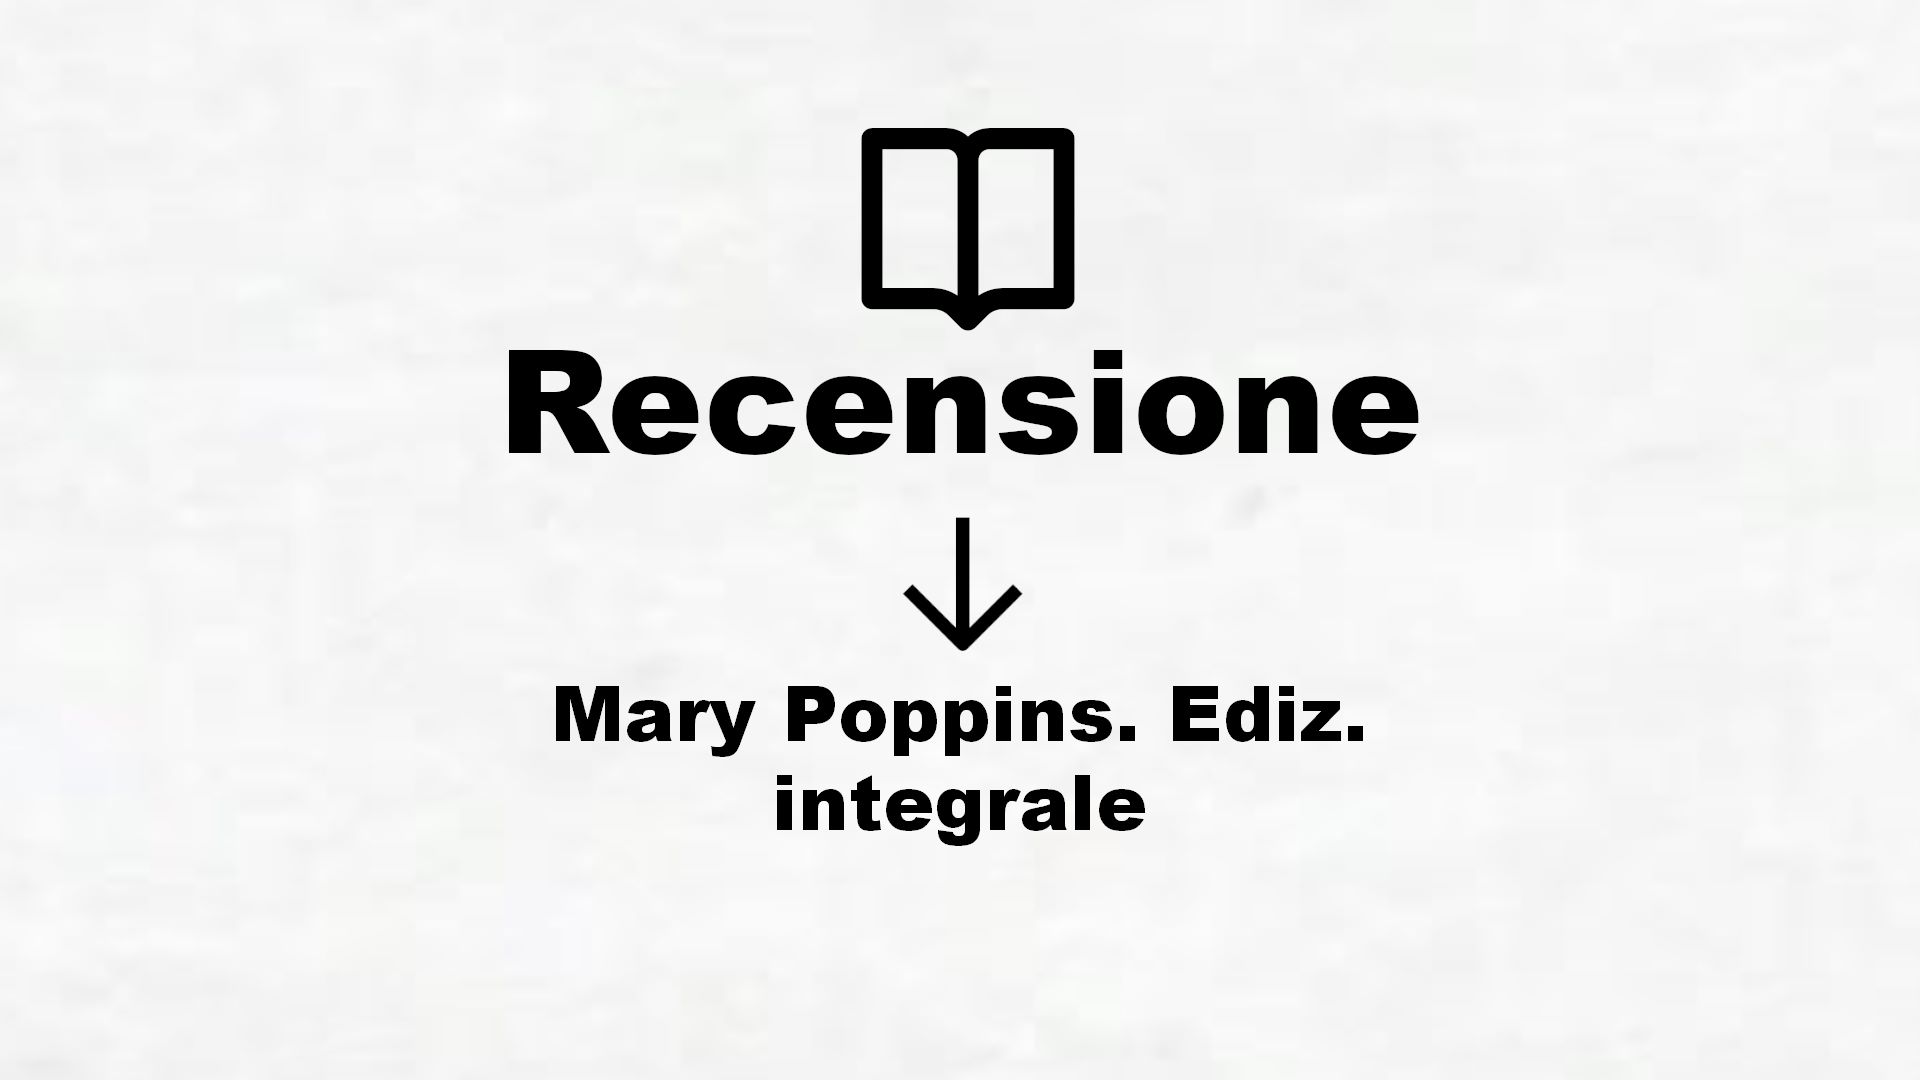 Mary Poppins. Ediz. integrale – Recensione Libro